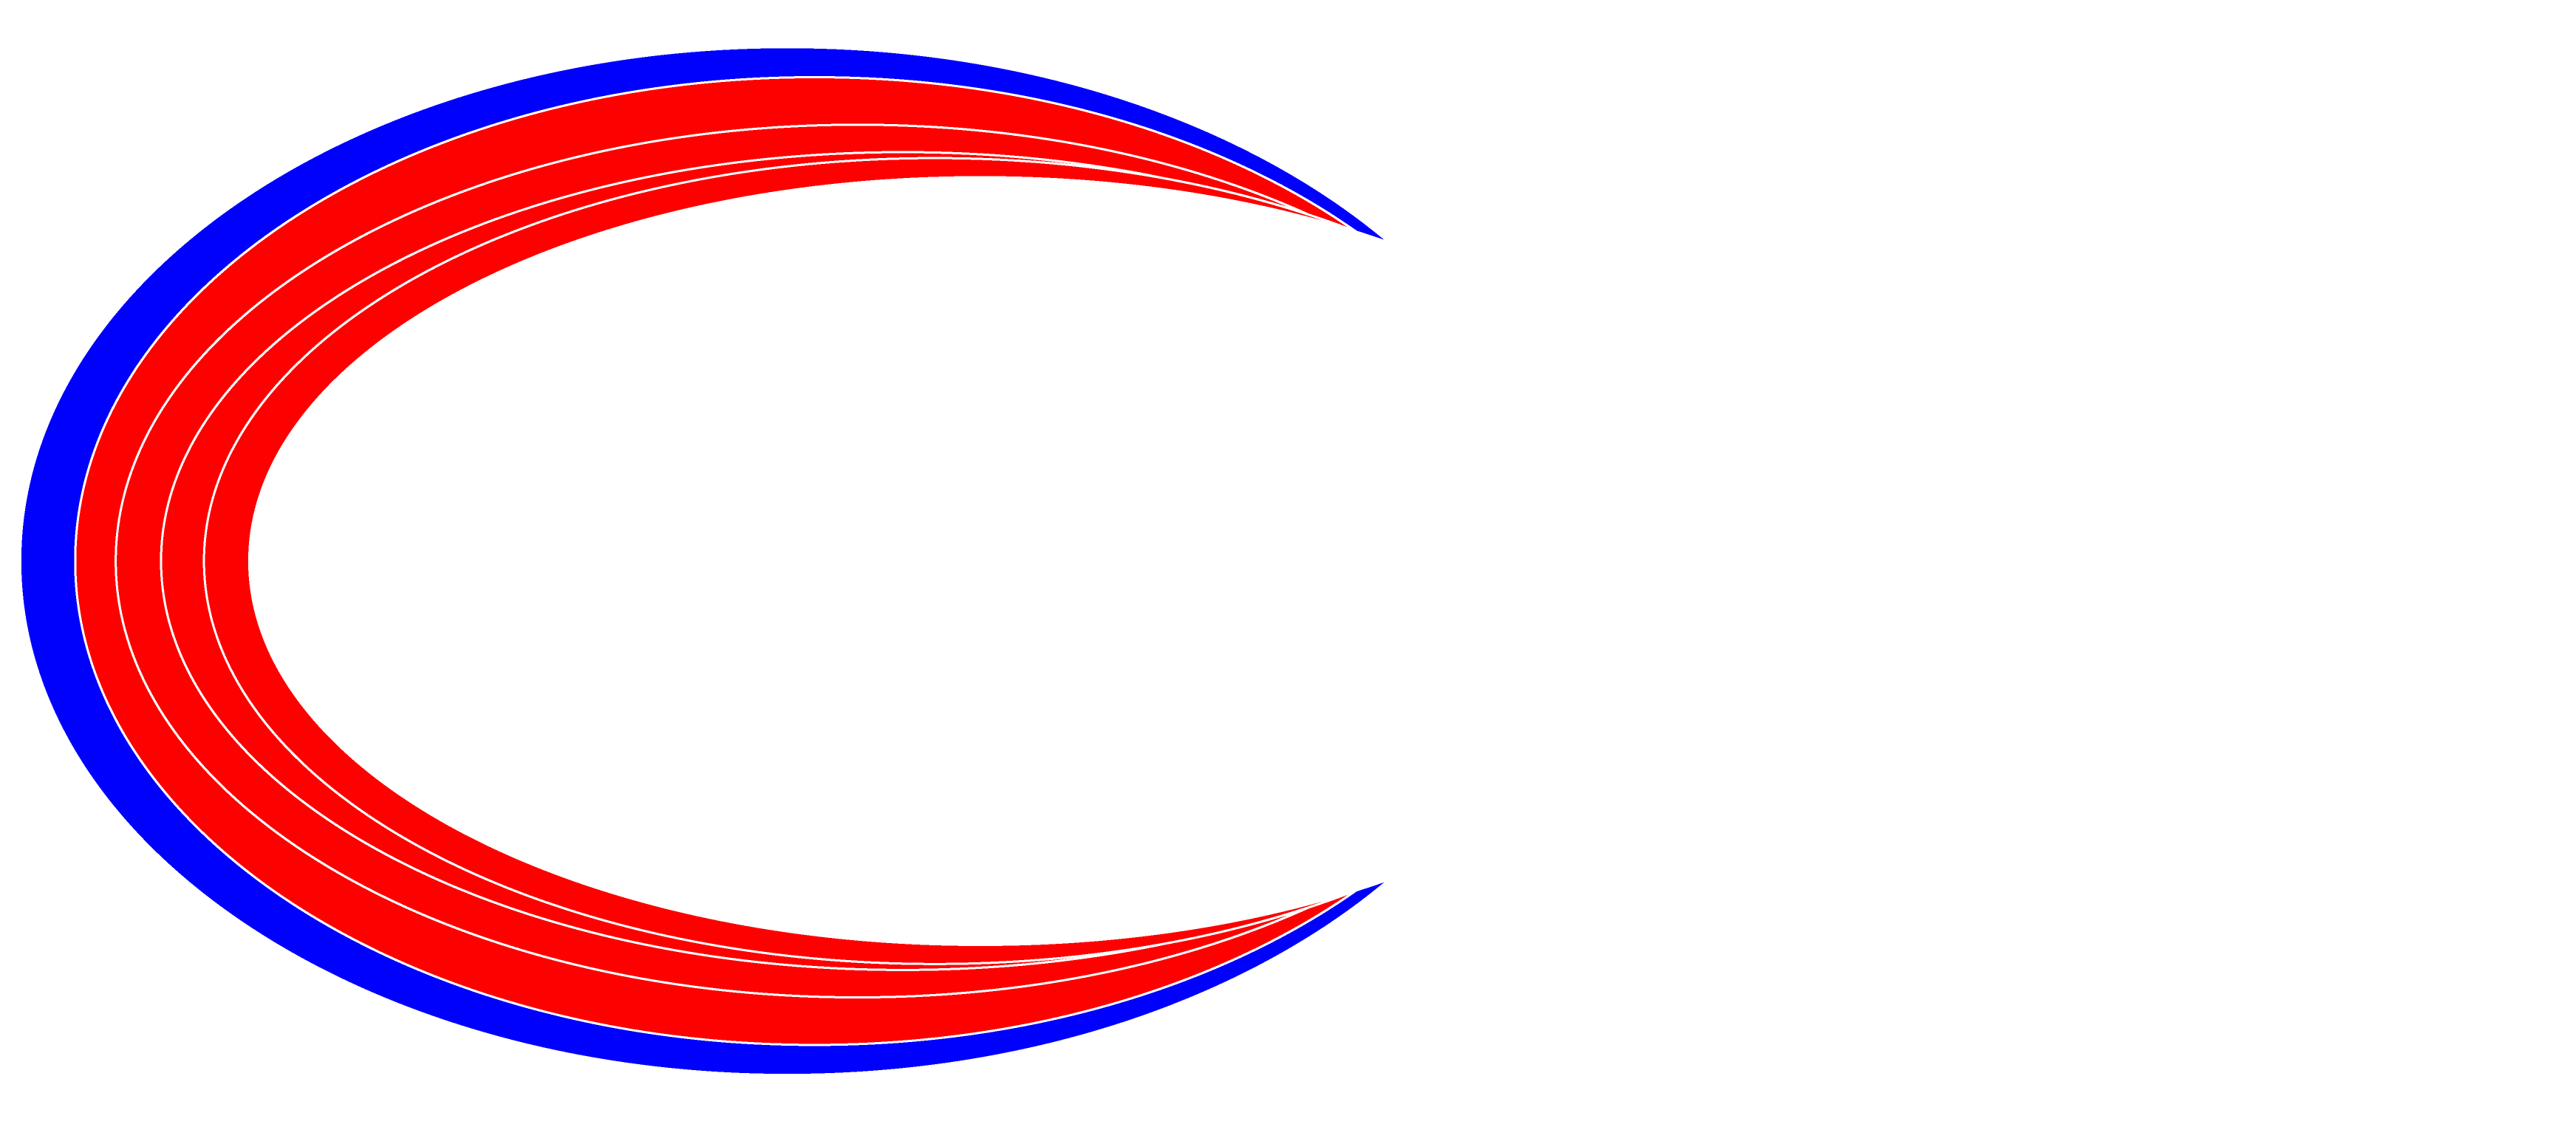 Triathlon Training Camps